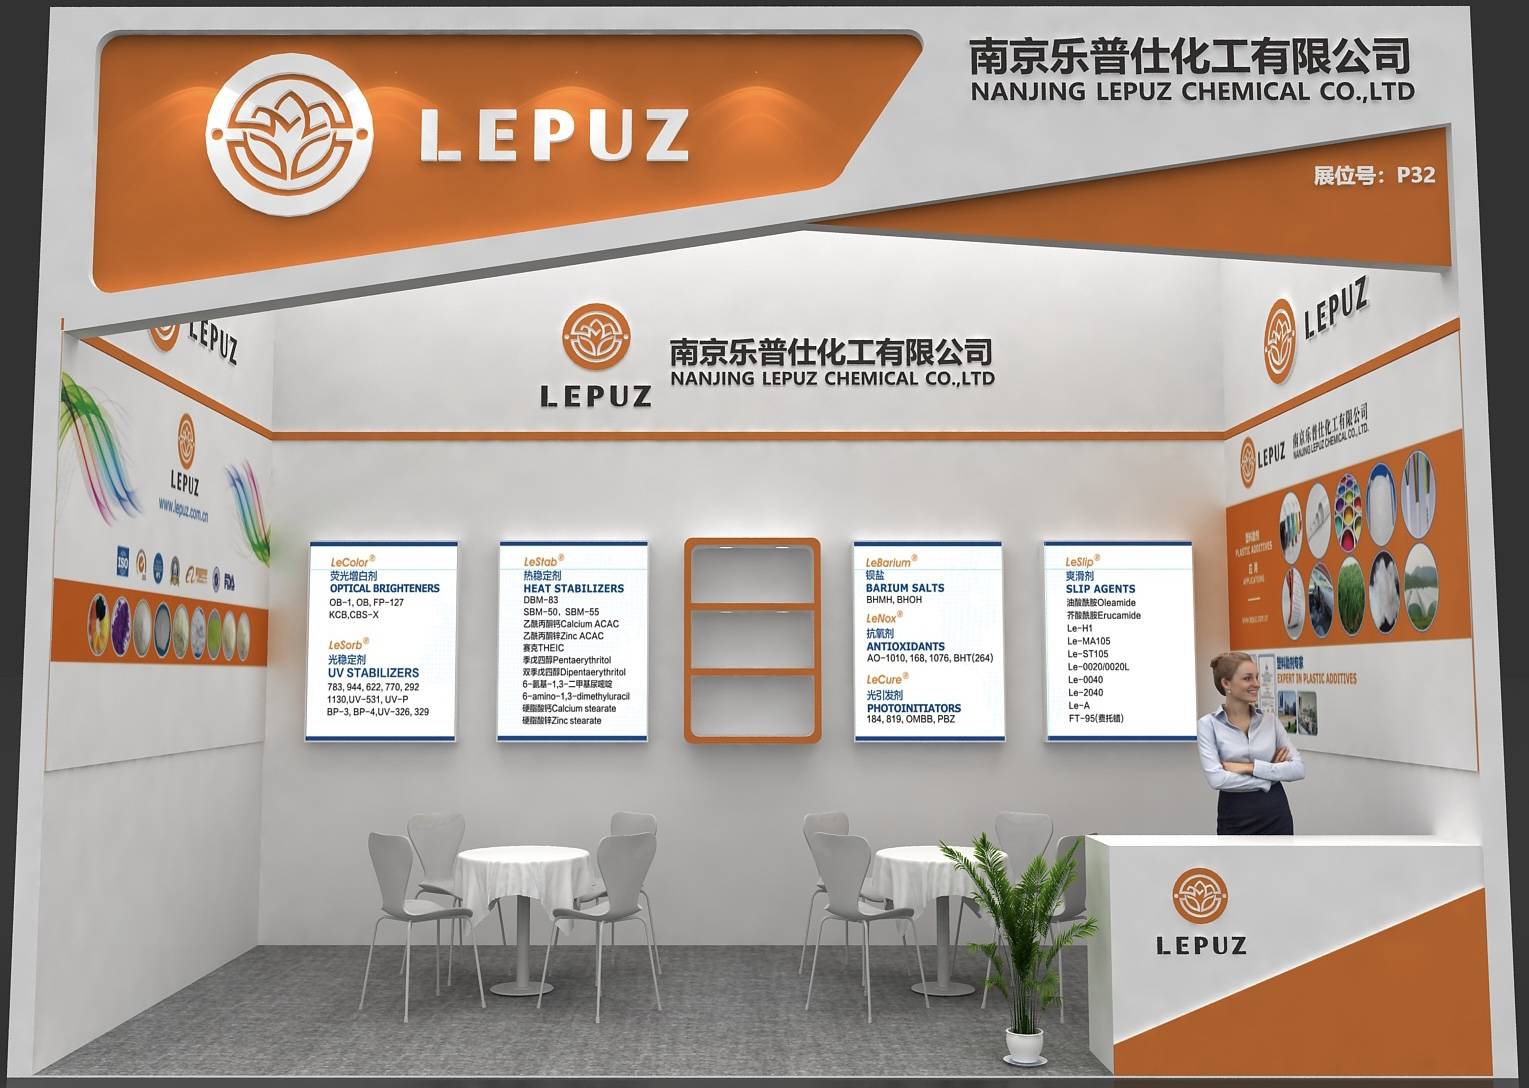 LEPUZ asistirá La 35a Exposición Internacional de las Industrias del Plástico y el Caucho en Shenzhe